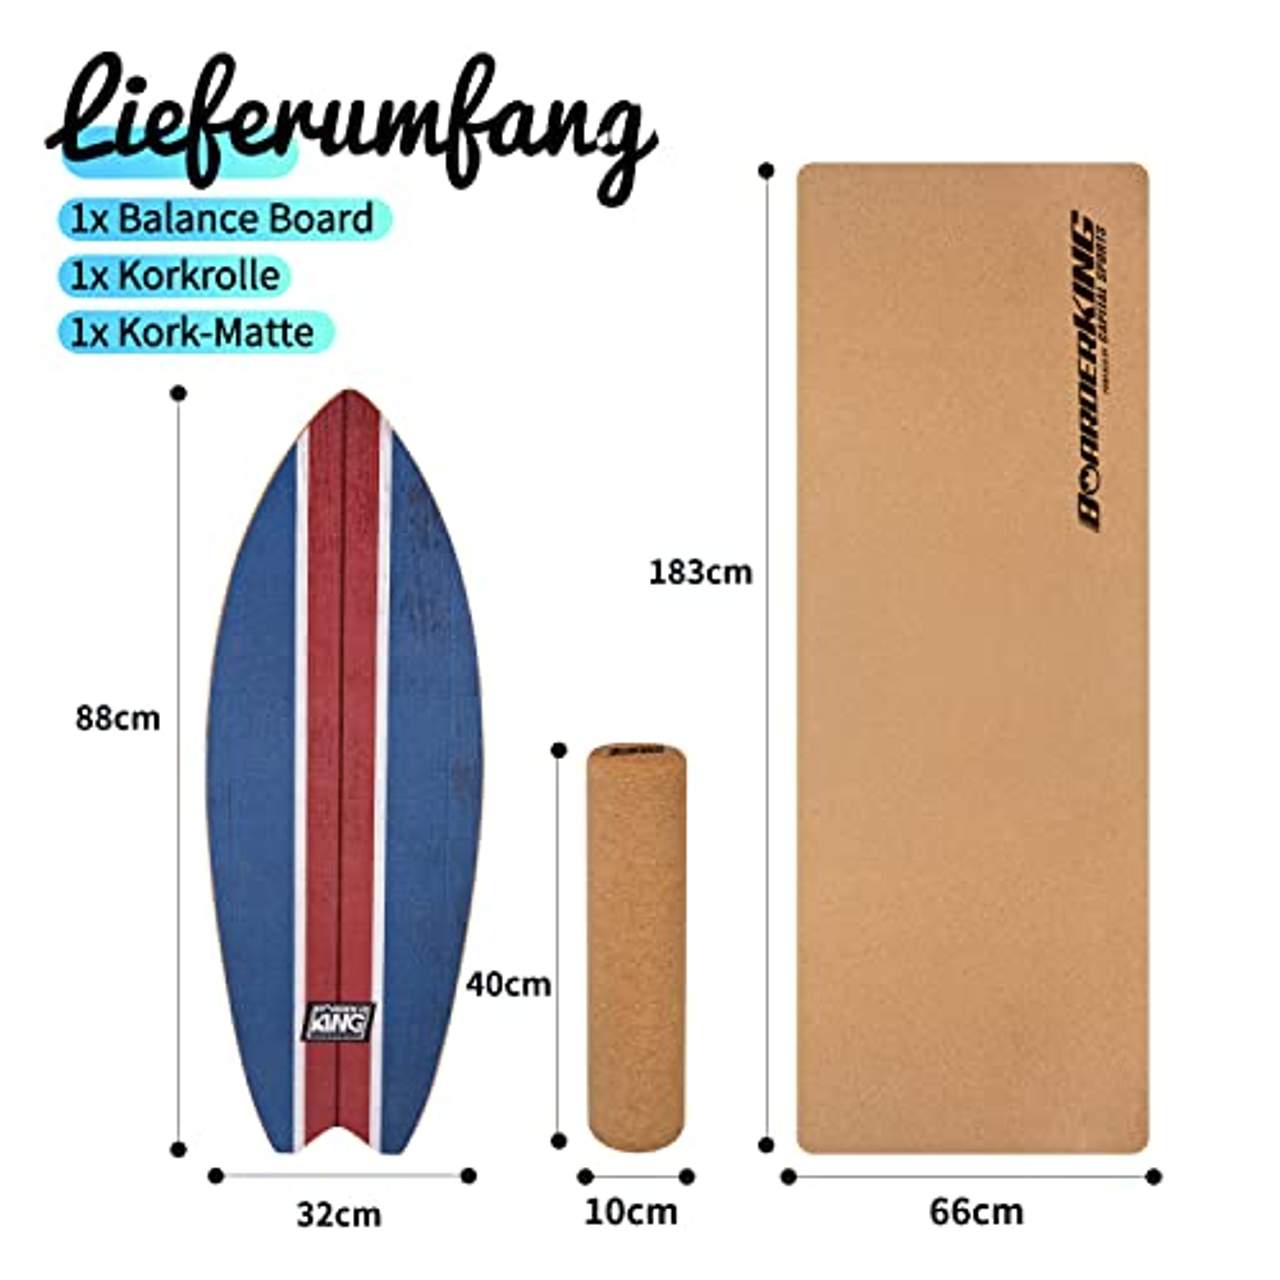 BoarderKING Indoorboard Wave Balance Board